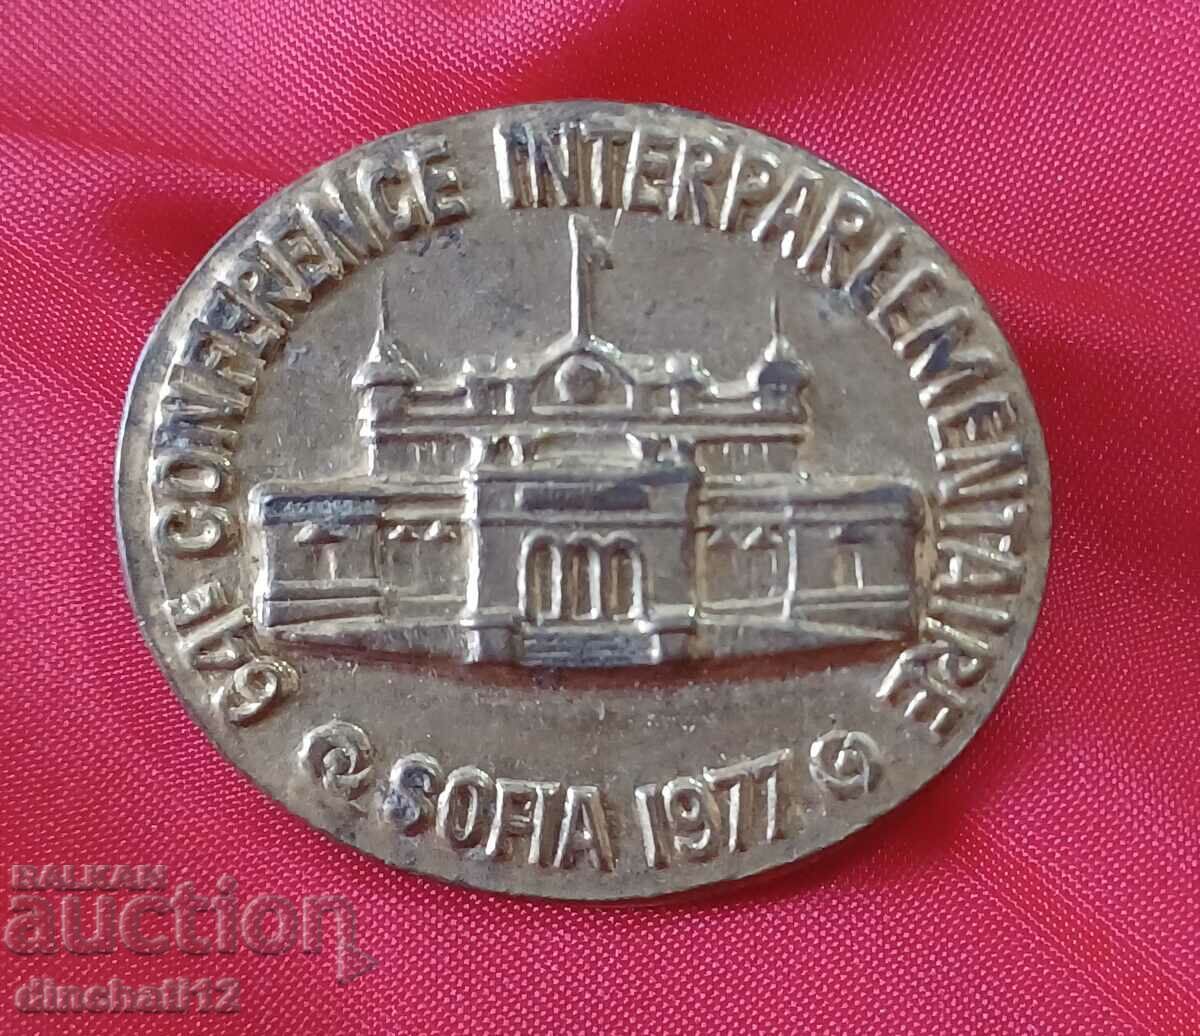 PARLIAMENT SOFIA. INTERPARLIAMENTARY CONGRESS -1977